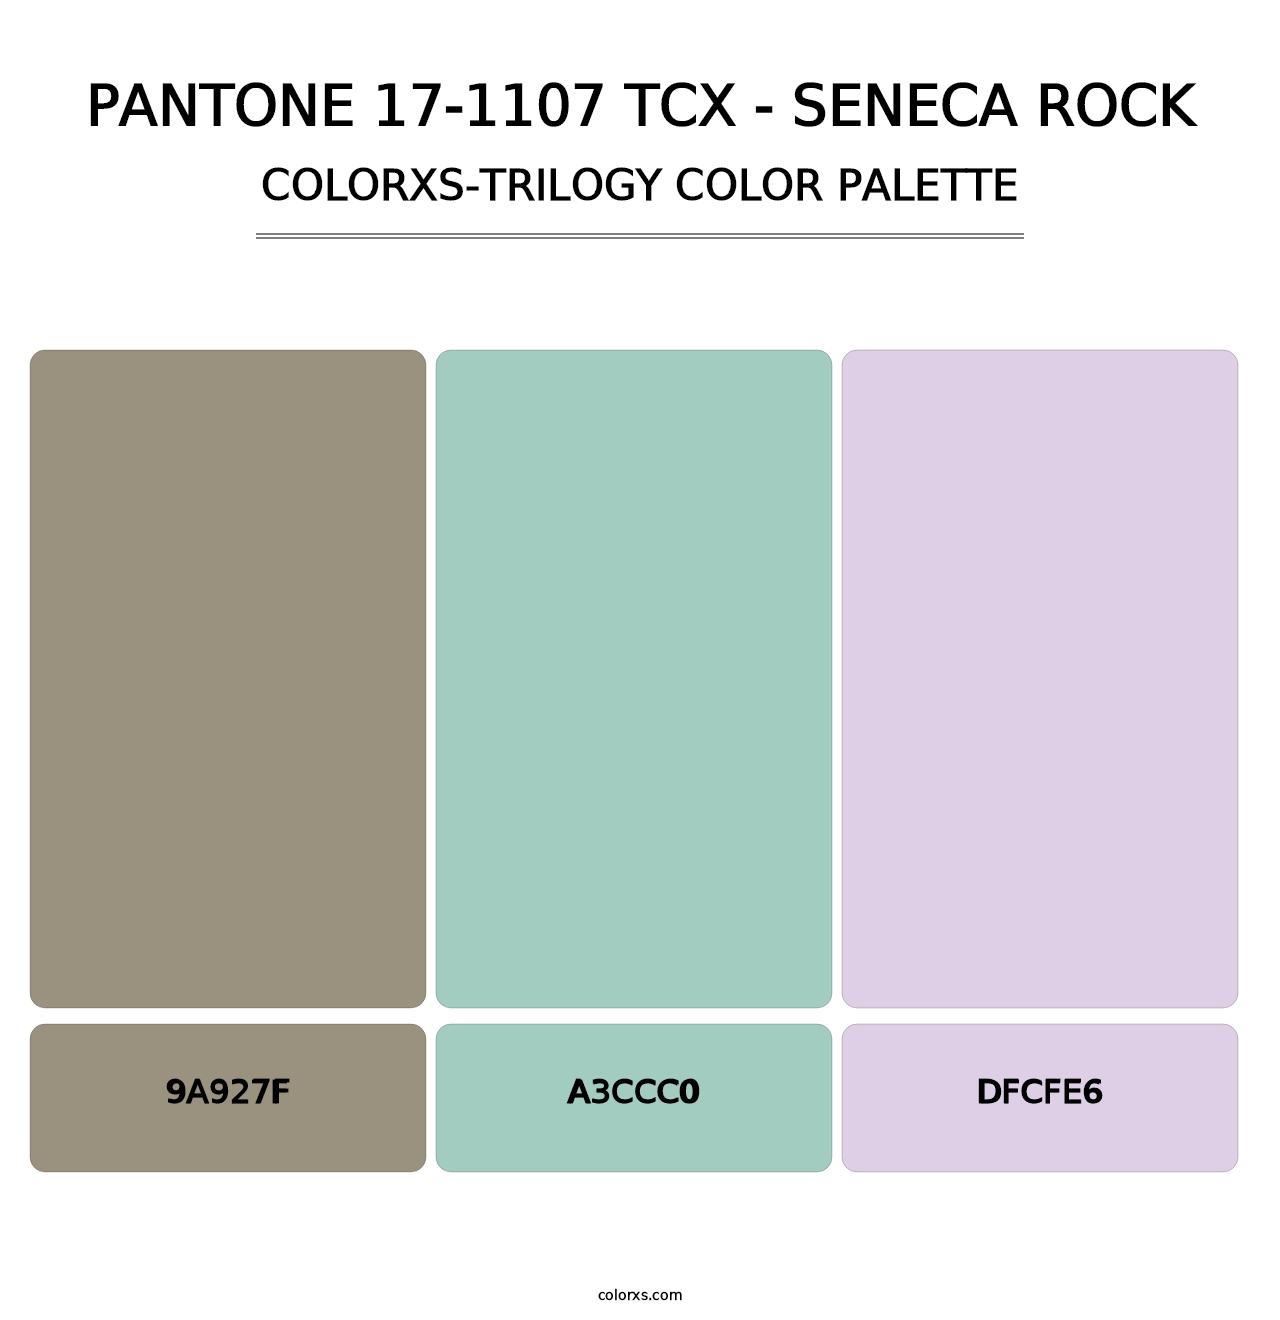 PANTONE 17-1107 TCX - Seneca Rock - Colorxs Trilogy Palette